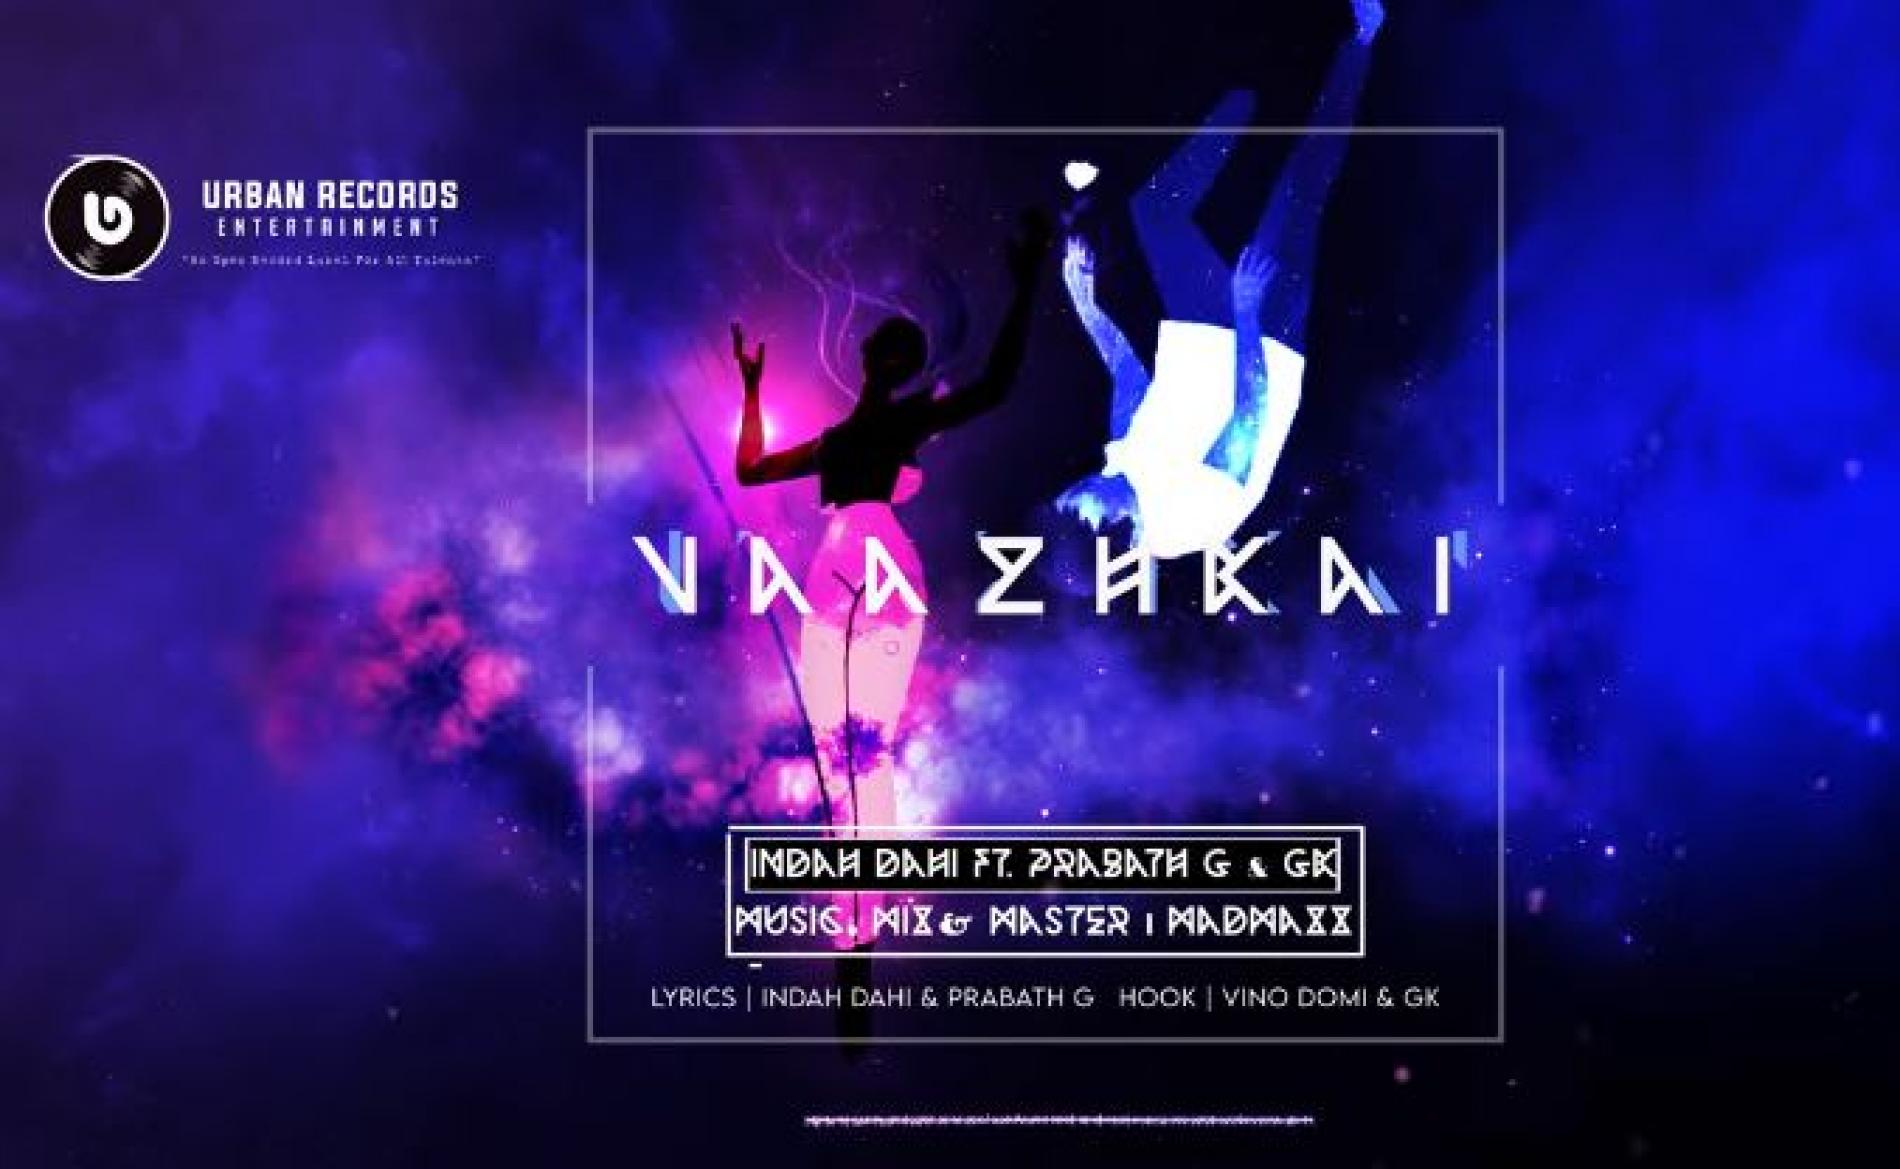 New Music : Indah Dahi Vazhkai Ft Prabath G & Gk (Official Audio Single)